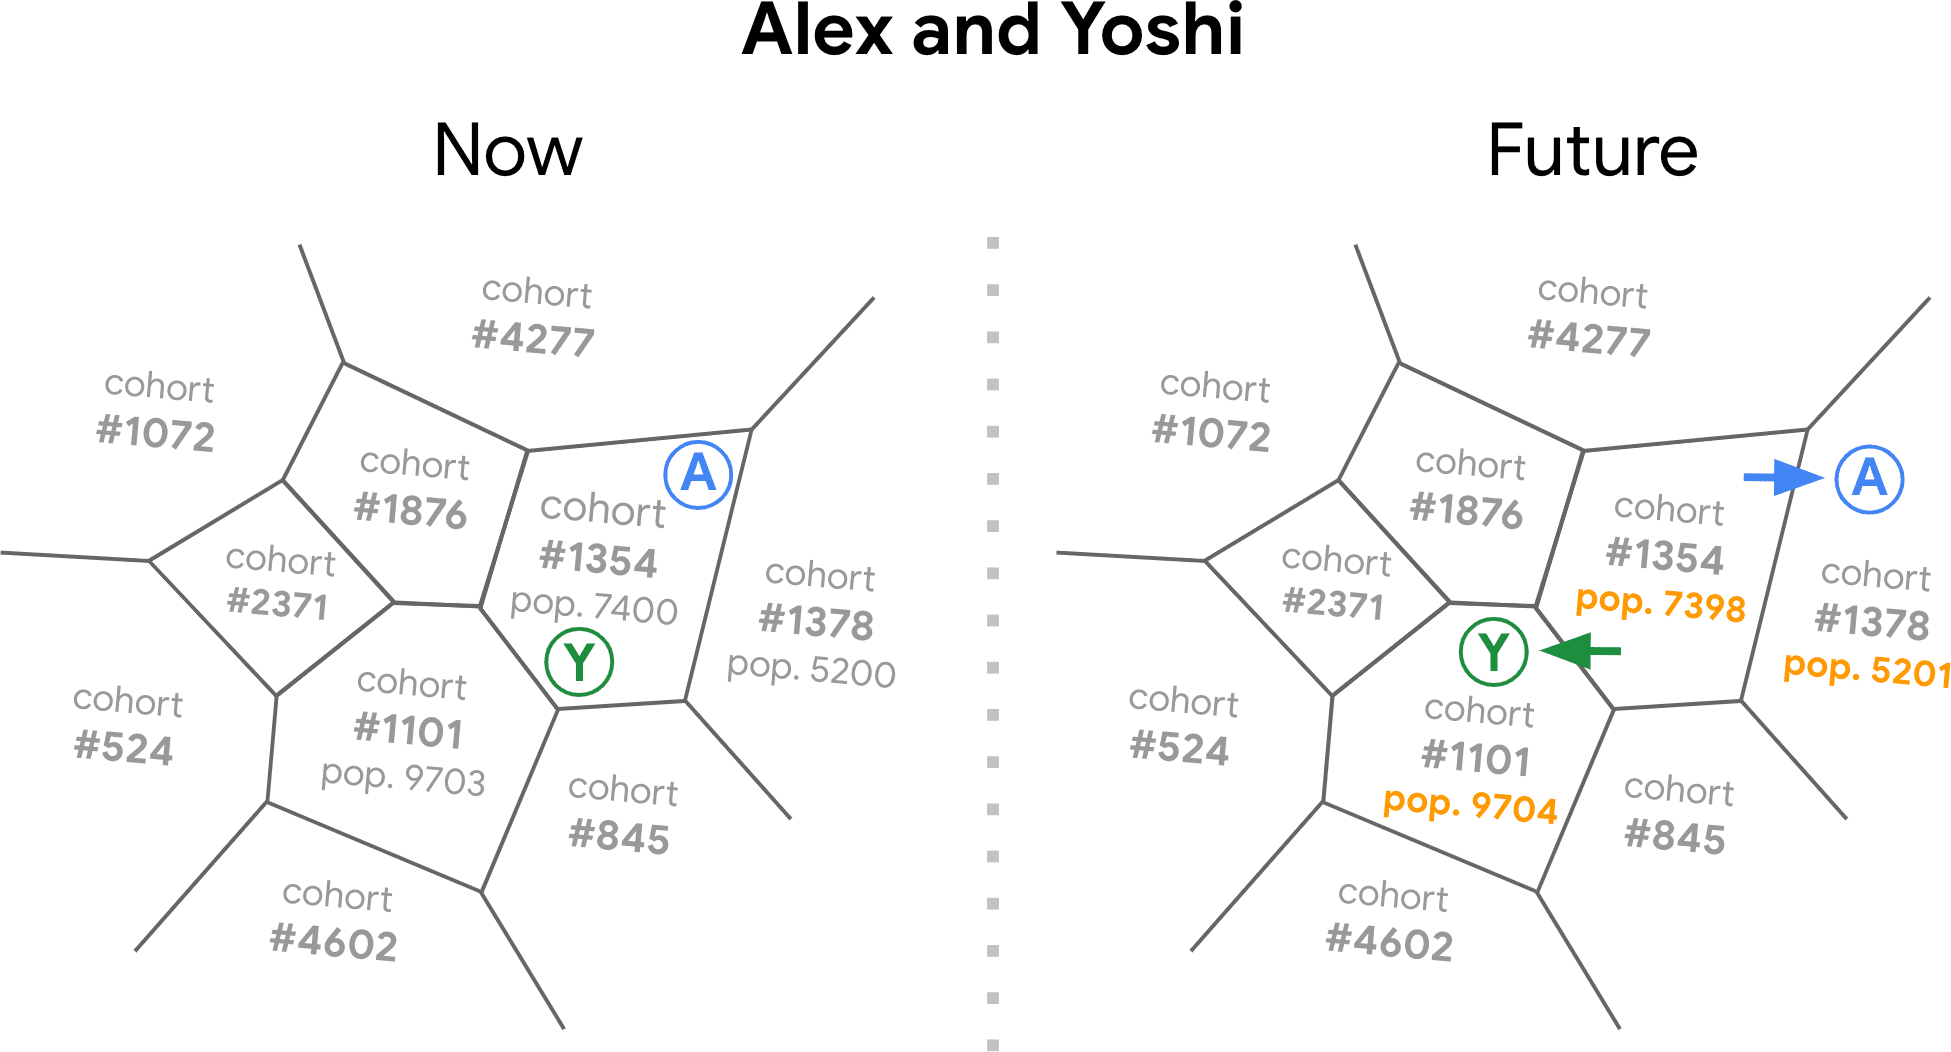 Bir FLoC sunucusu tarafından oluşturulan, her biri bir kohort numarasına sahip birden fazla segmenti gösteren &quot;tarama geçmişi alanı&quot; şeması. Şemada, göz atma ilgi alanları zaman içinde değiştikçe Yoshi ve Alex&#39;e ait tarayıcıların bir kohorttan diğerine geçişi gösterilmektedir.